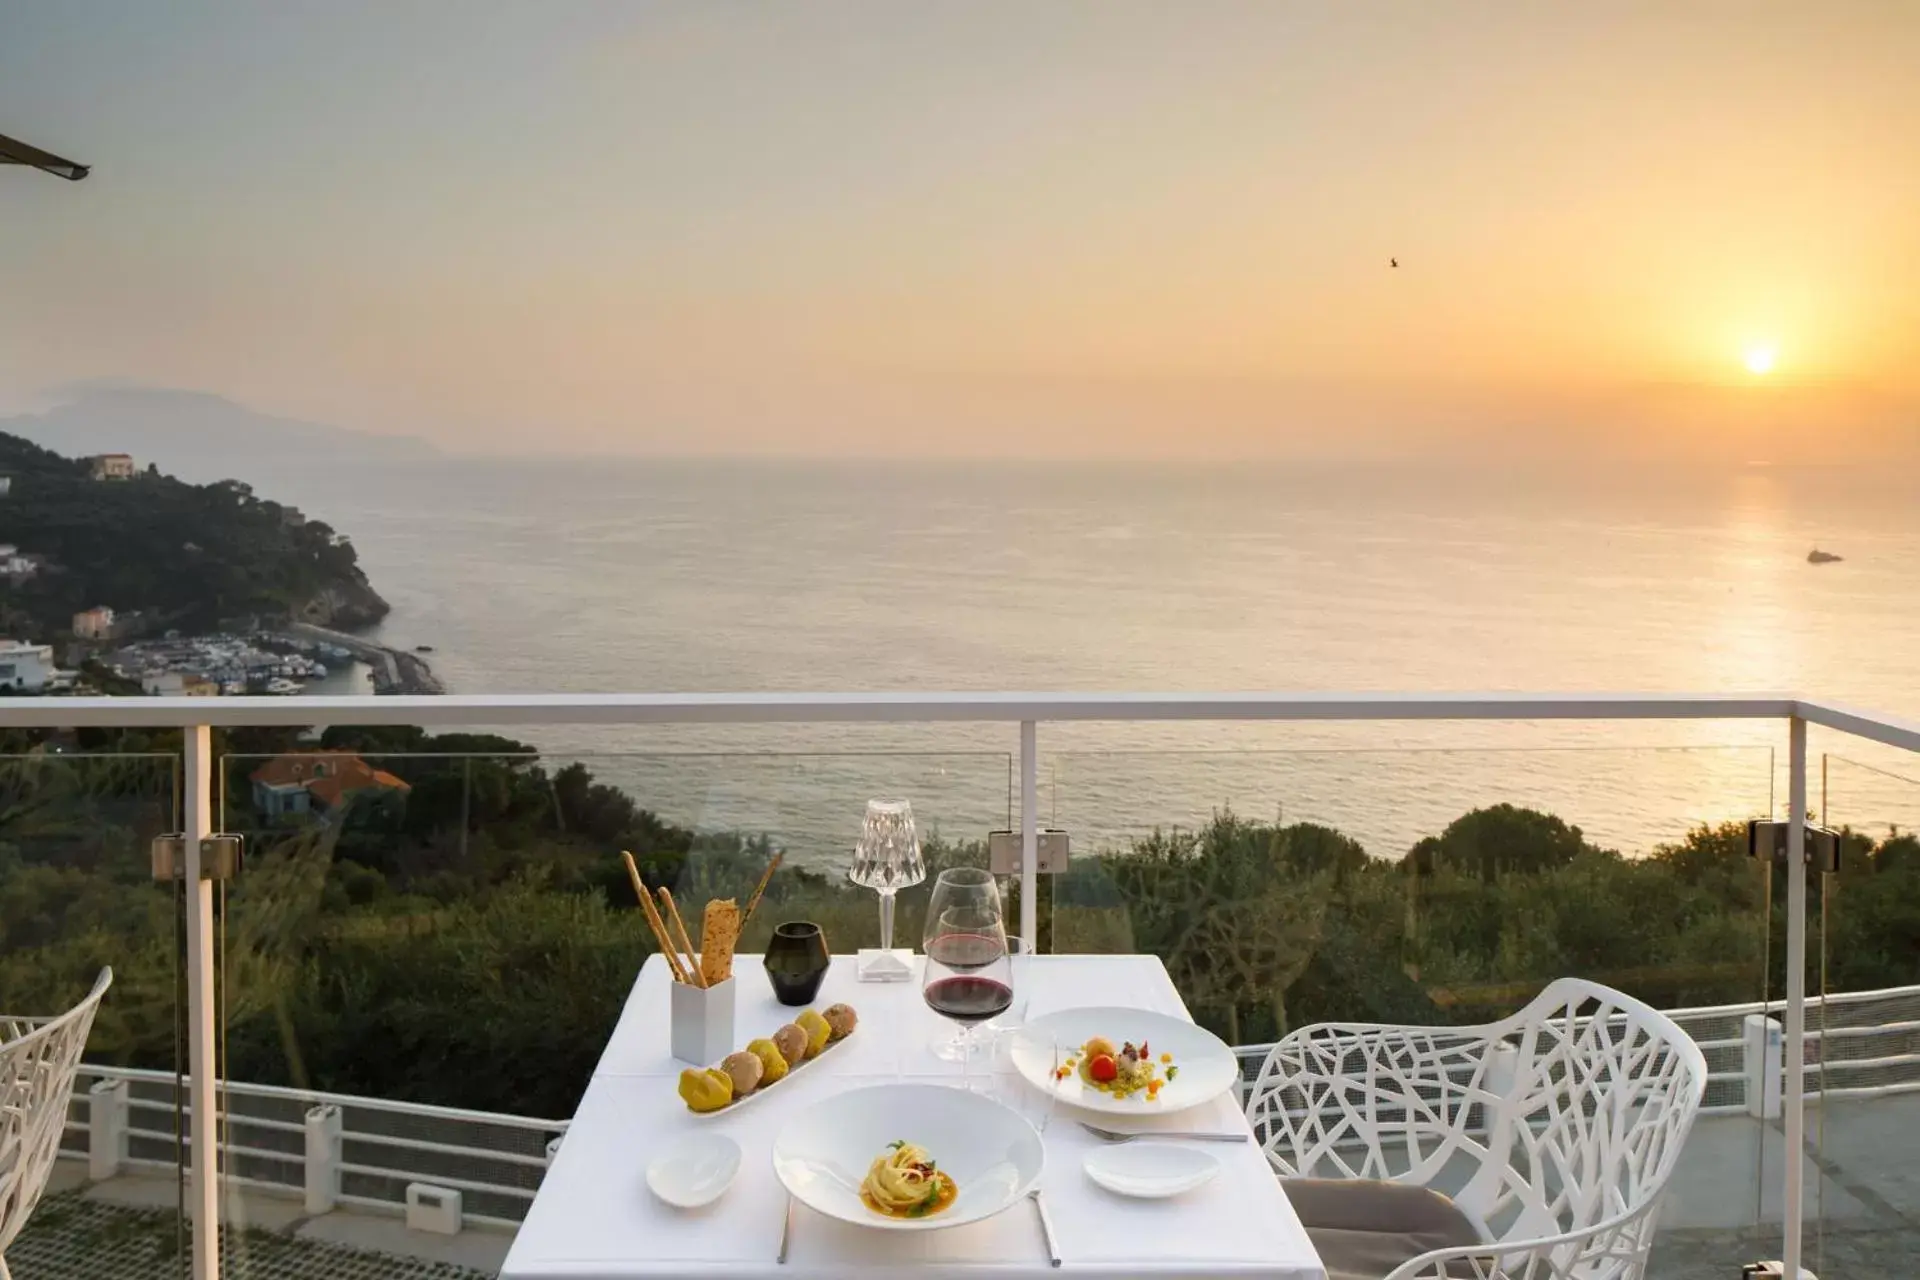 Restaurant/places to eat, Sunrise/Sunset in Villa Fiorella Art Hotel